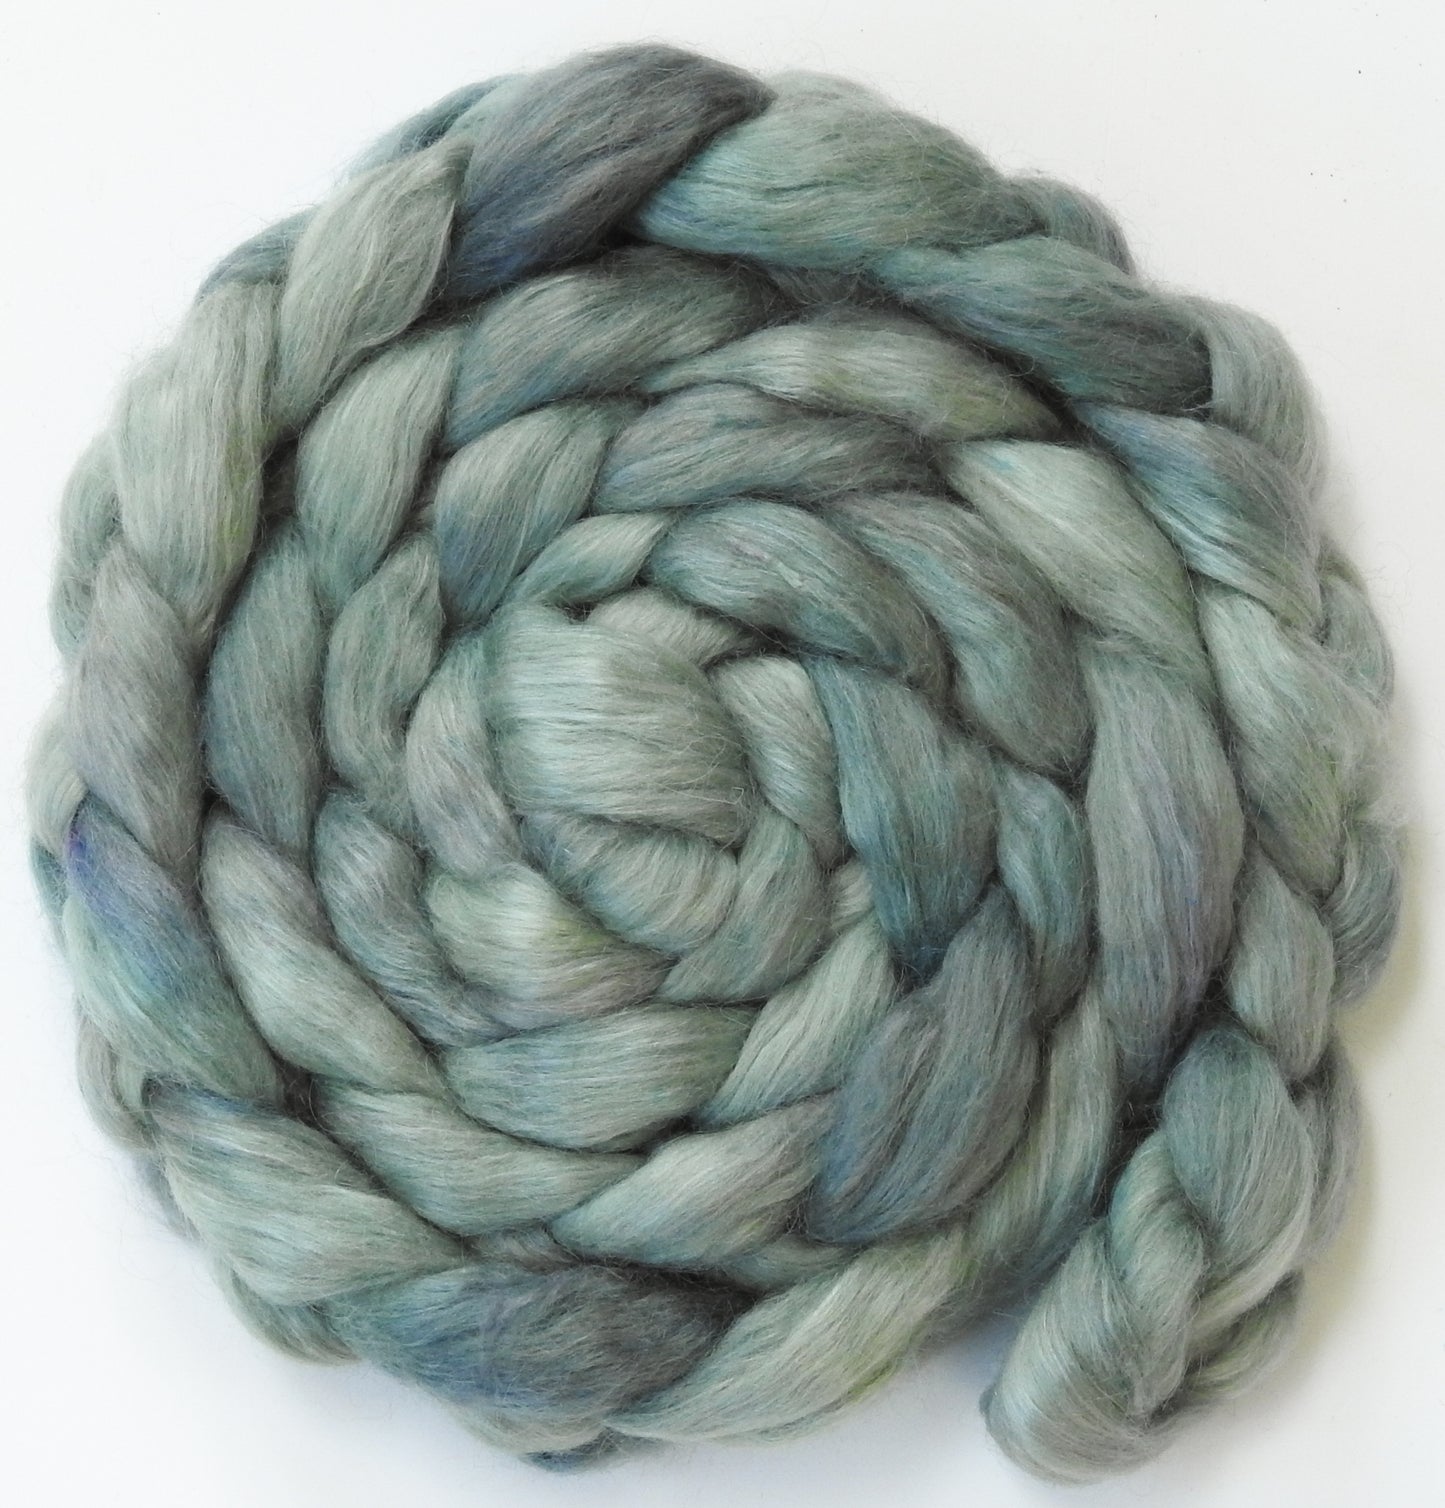 Silver Sage (5.9 oz) - Batt in a Braid #52- Wensleydale/ Mulberry silk/ Polwarth (60/25/15)